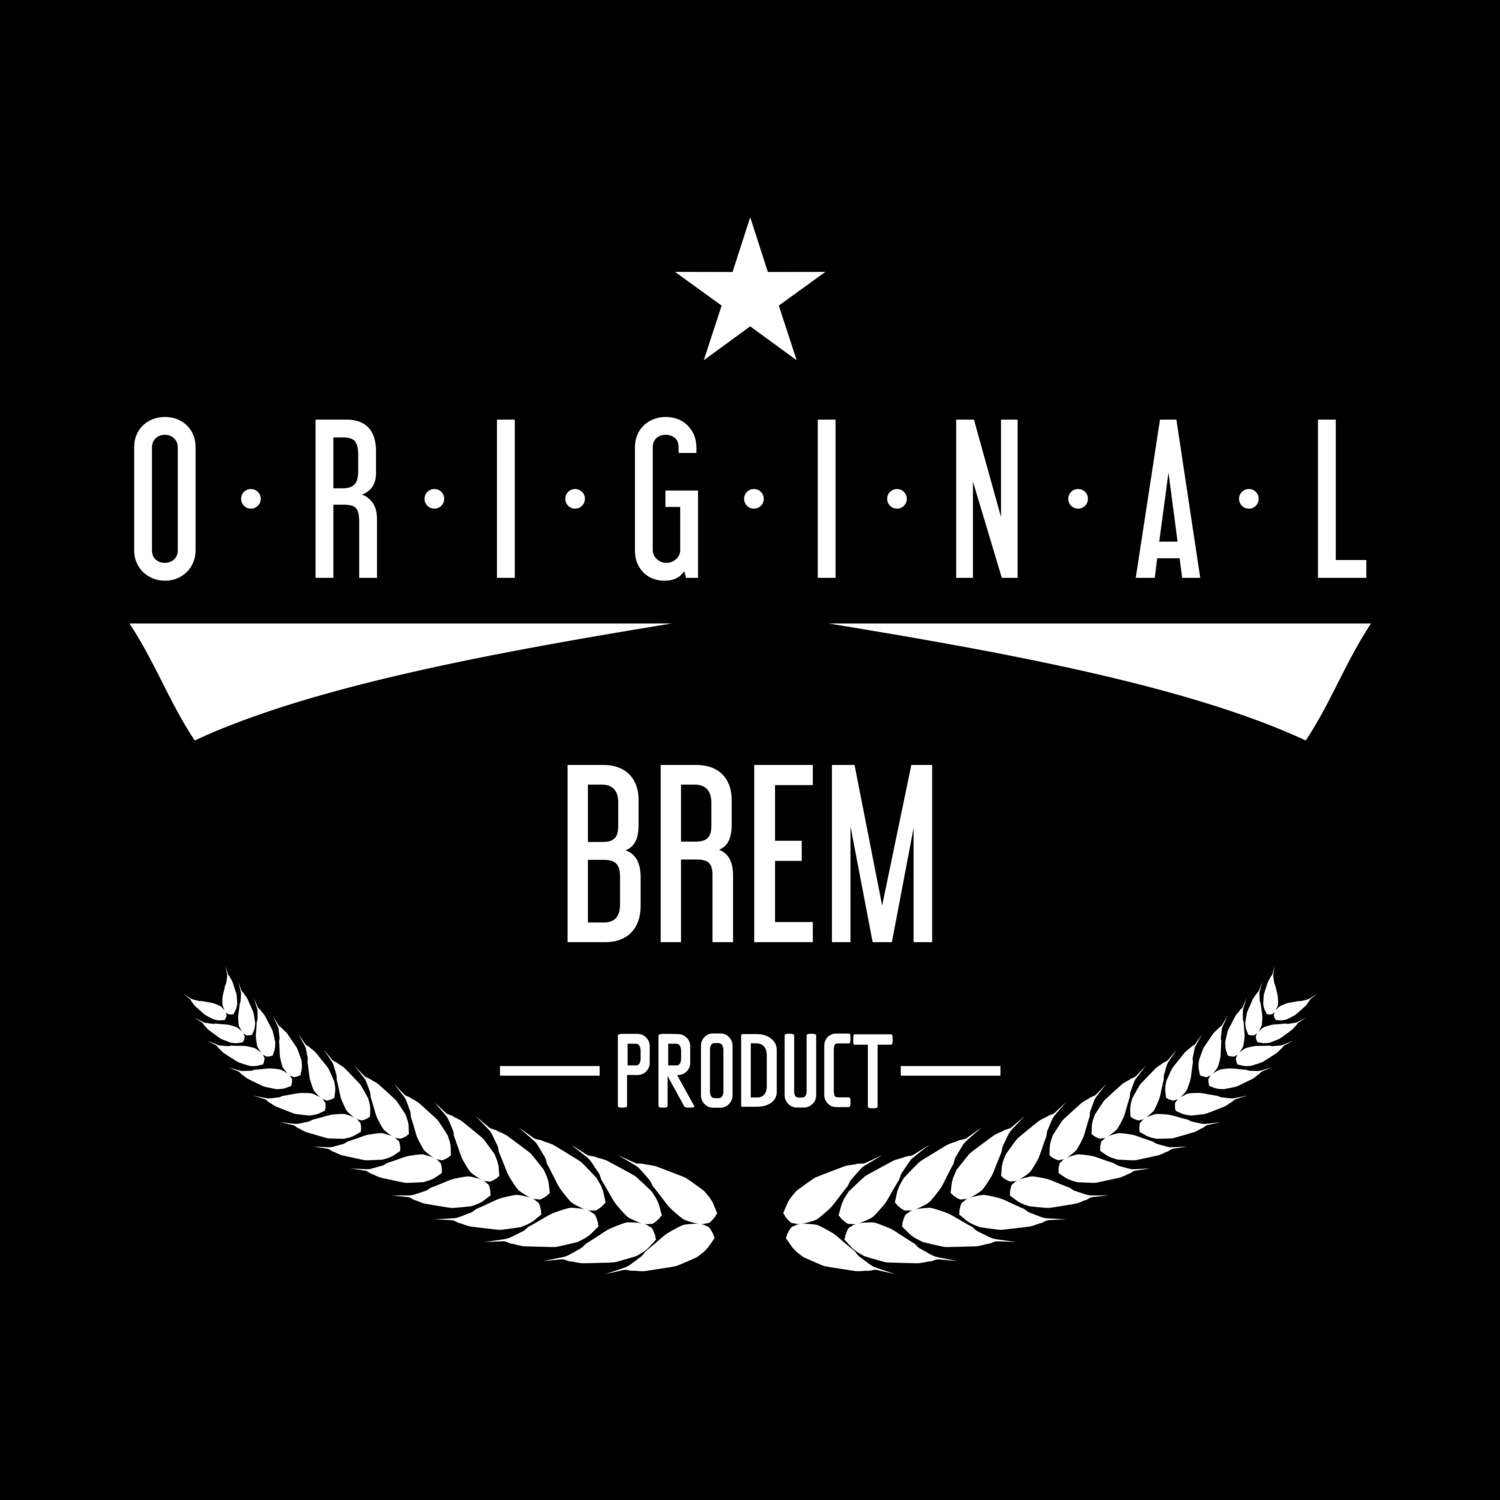 Brem T-Shirt »Original Product«